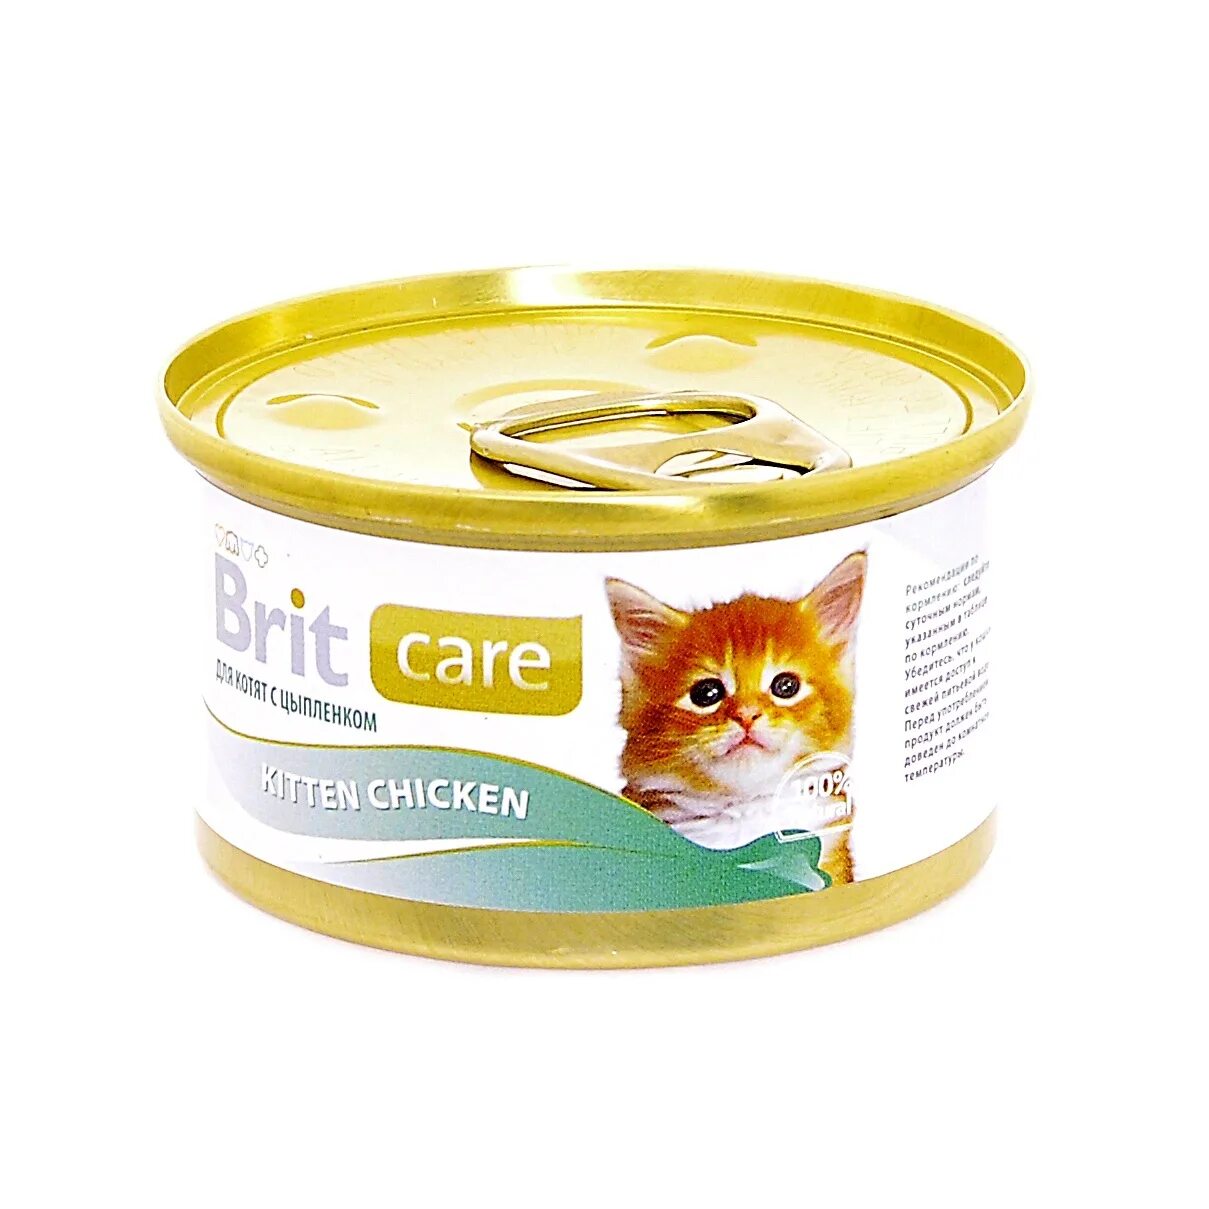 Brit консервы 80г. Брит Care Kitten консервы. Brit Care корм для котят. Brit для котят консервы. Влажный корм для кошек консервы